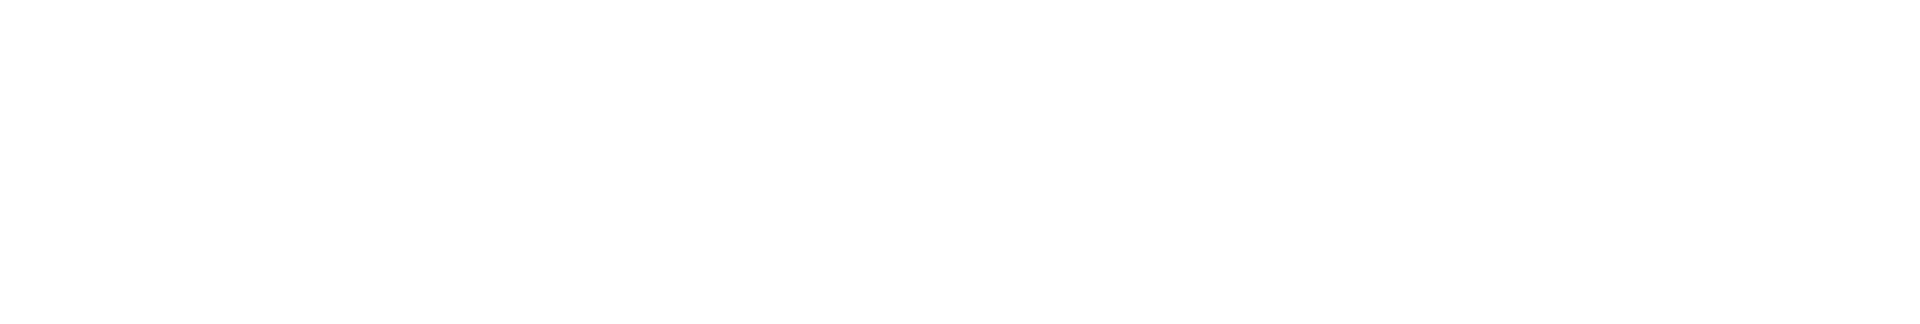 Galloway Realty AZ Logo